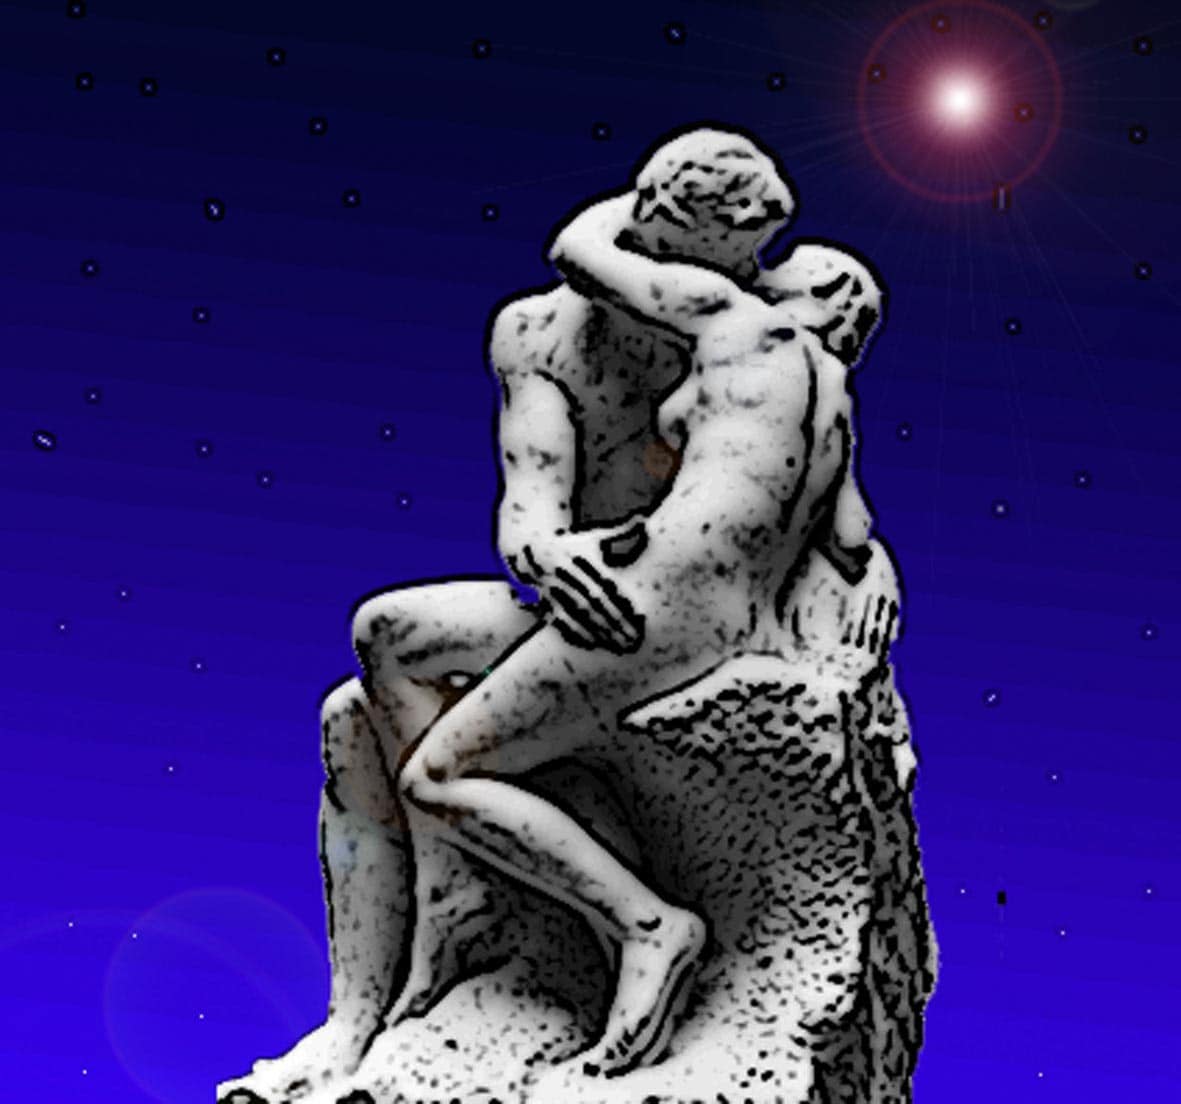 Immagine della famosa statua (Per leggerne la descrizione proseguire nel link). Si vede in figura integrale la statua del Bacio su uno sfondo di cielo stellato blu.